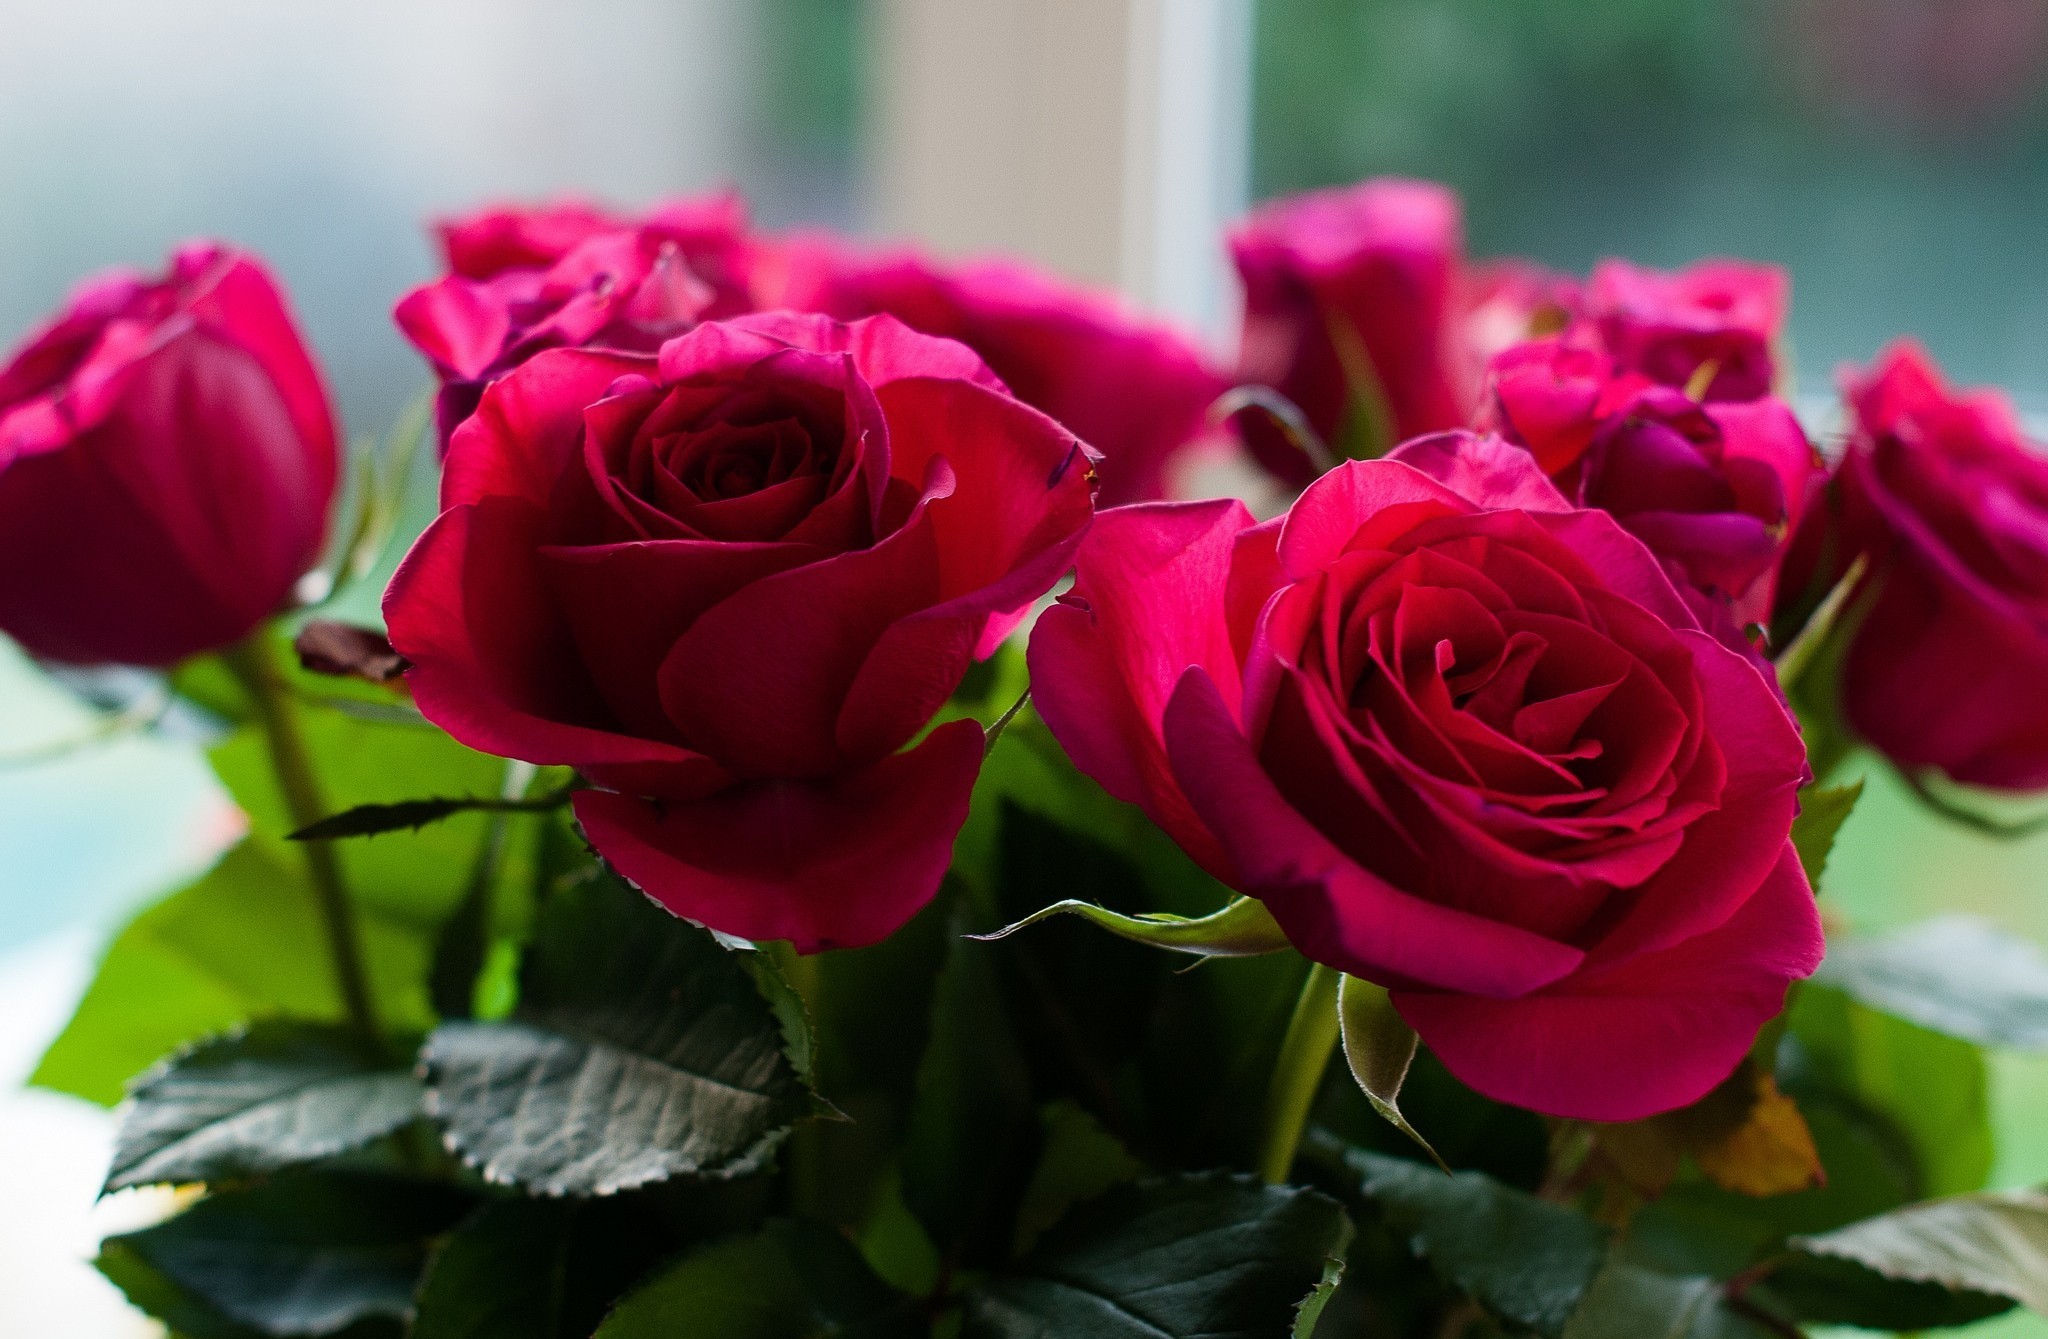 Картинка с бархатными розами